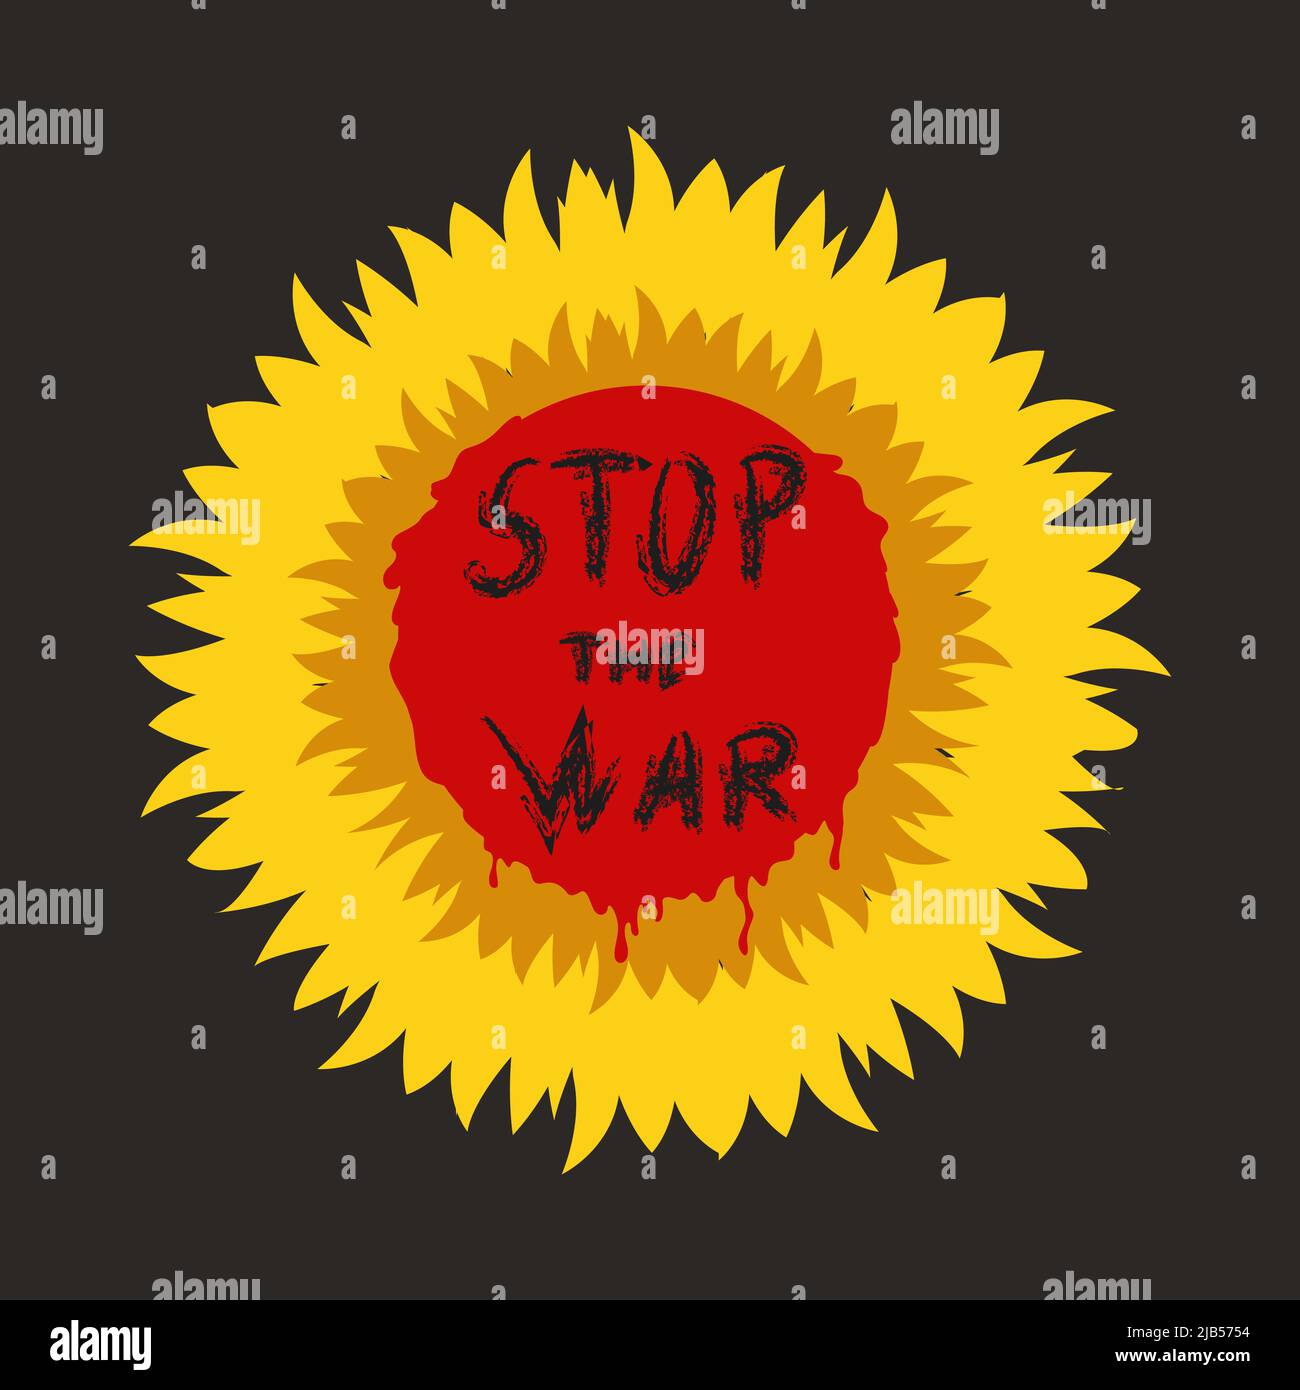 Kein Krieg. Stoppt den Krieg, die Inschrift auf der blutigen Sonnenblume, den Protest gegen Aggression und bewaffneten Angriff. Vektorgrafik Stock Vektor